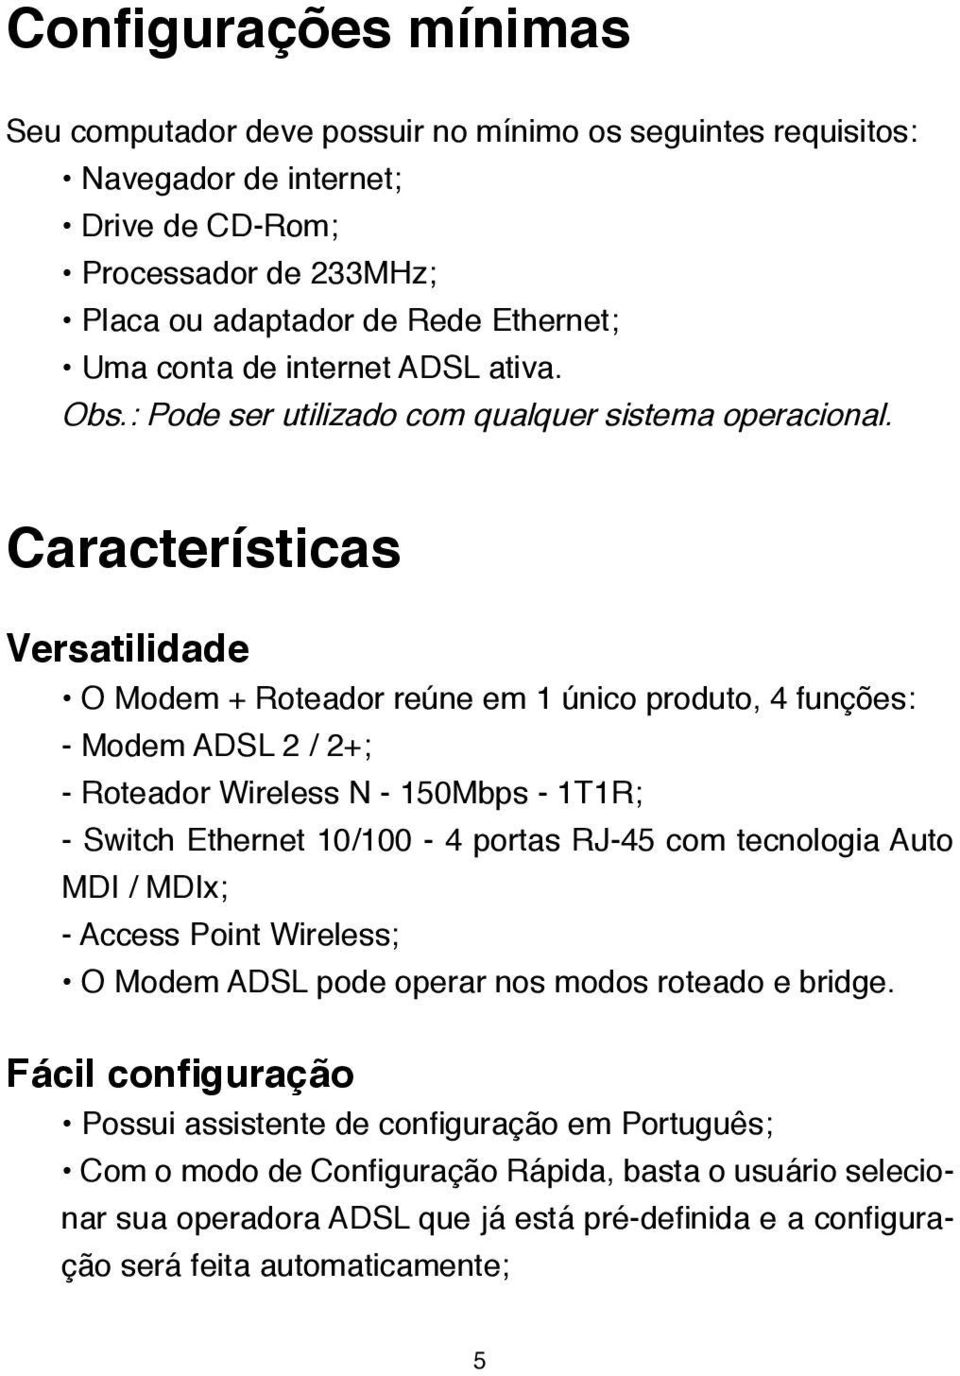 Características Versatilidade O Modem + Roteador reúne em 1 único produto, 4 funções: - Modem ADSL 2 / 2+; - Roteador Wireless N - 150Mbps - 1T1R; - Switch Ethernet 10/100-4 portas RJ-45 com